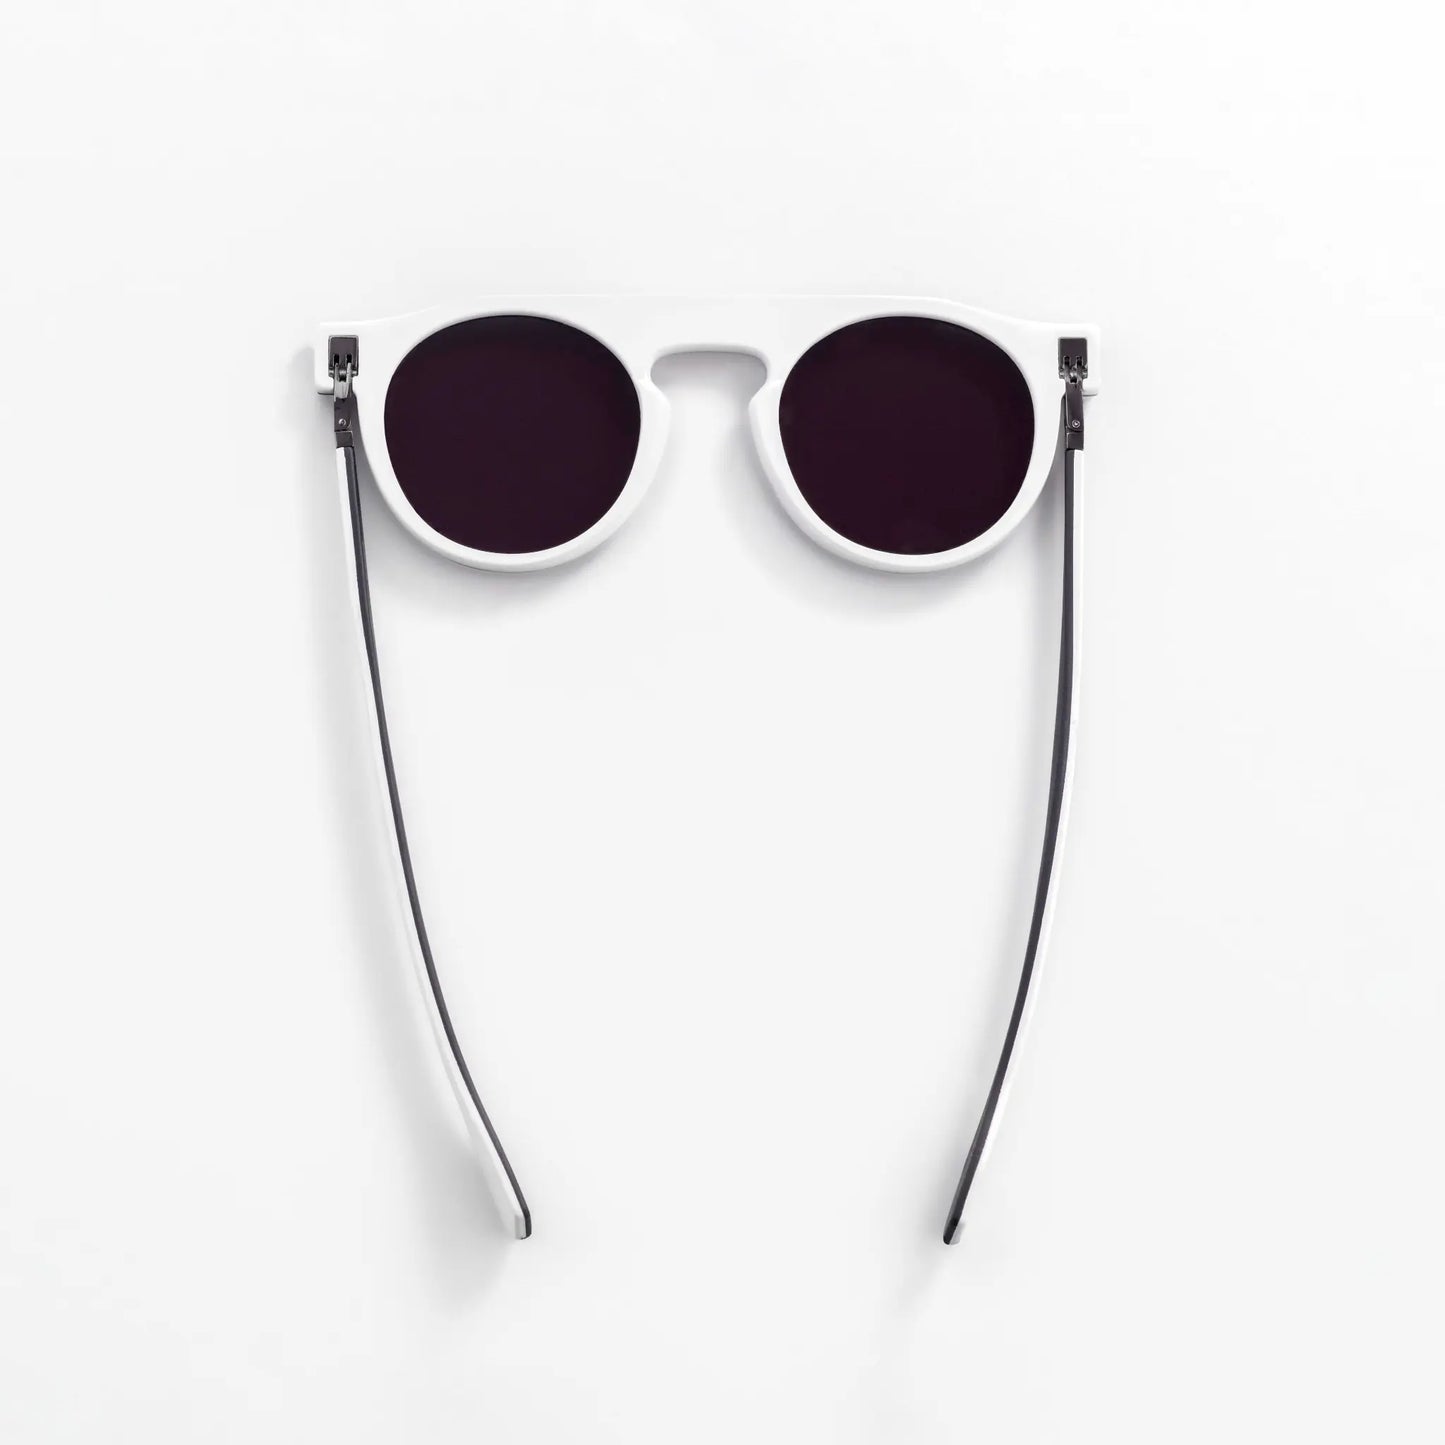 Reverso sunglasses white frame reversible & ultra light top view